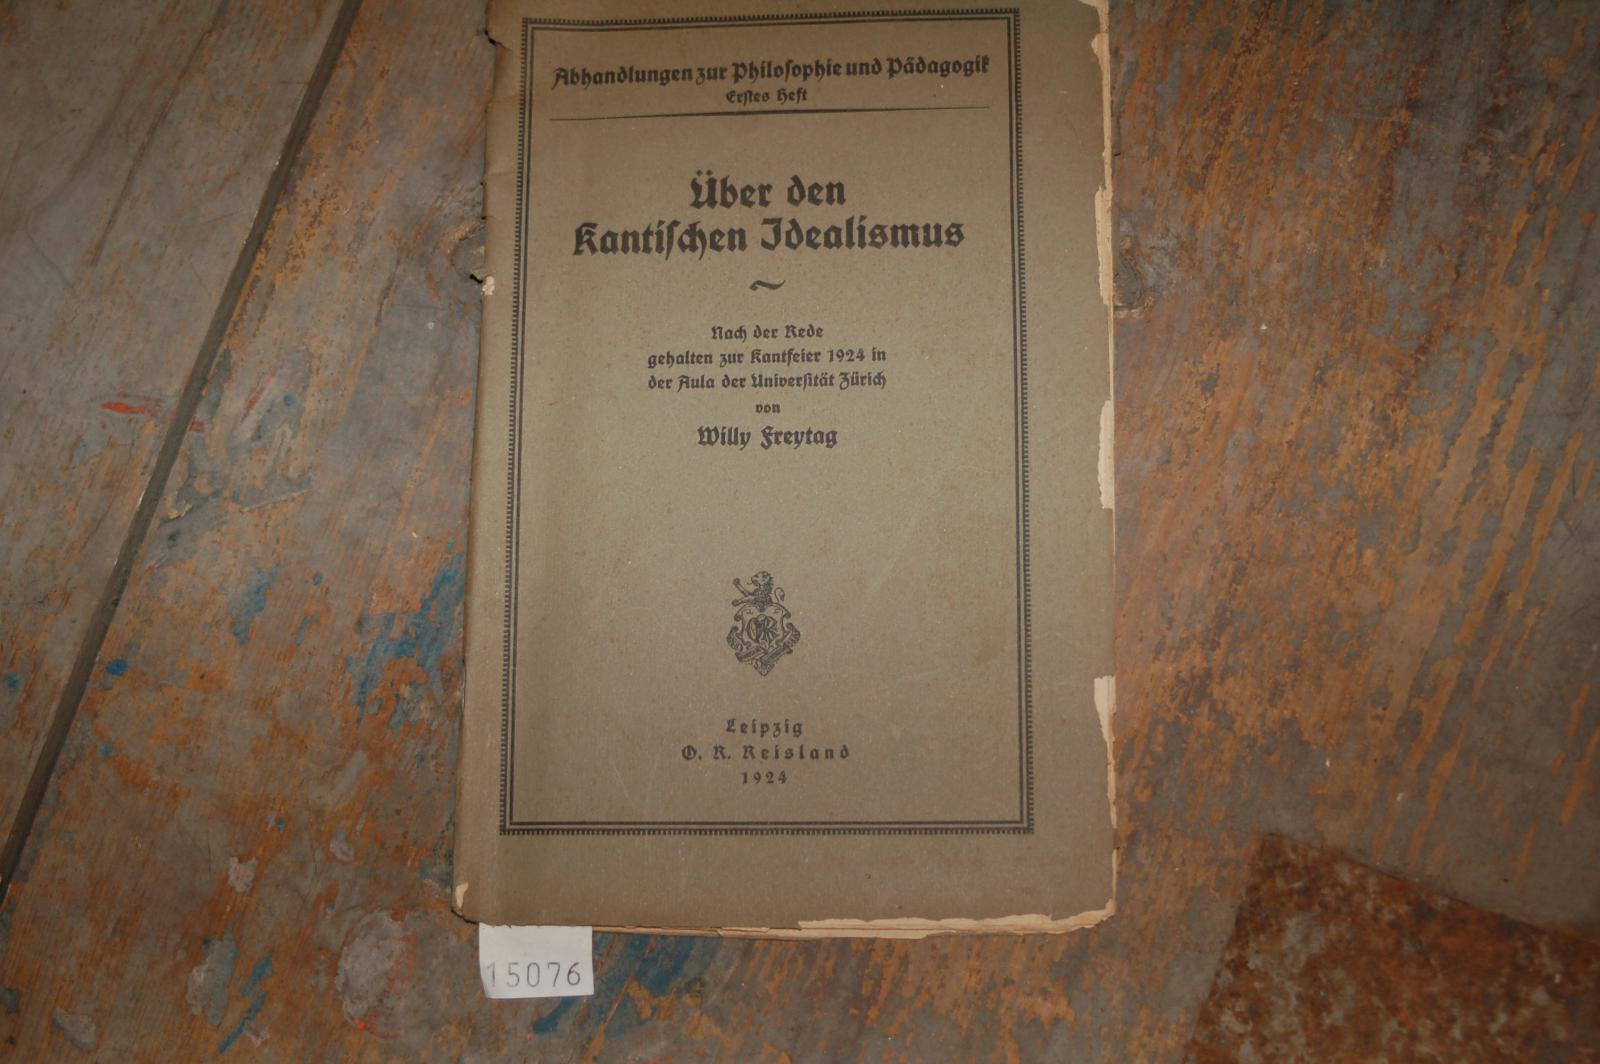 Freytag Willy  Über den kantischen Idealismus  Nach der rede gehalten zur Kantfeier 1924 in der Aula der Universität Zürich 